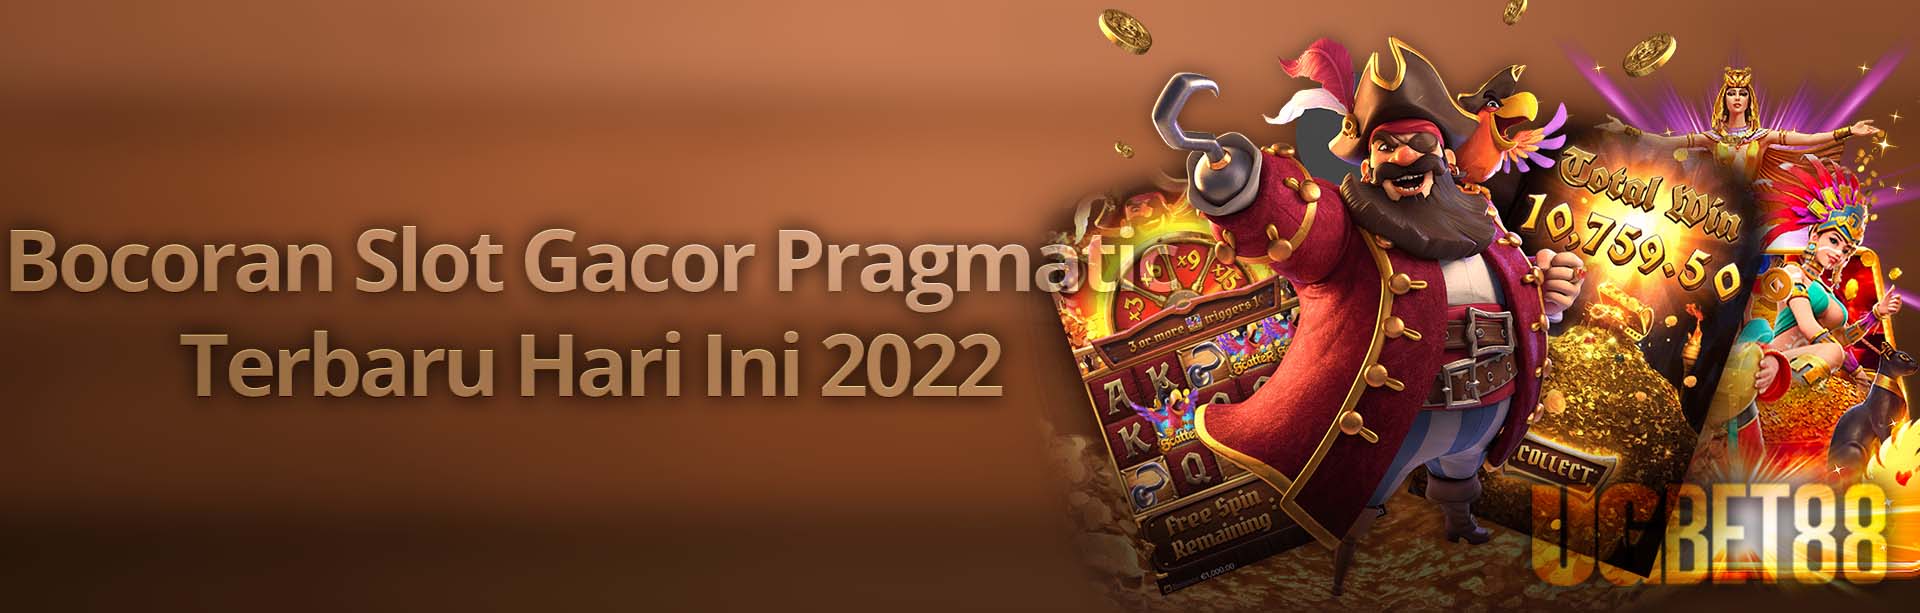 UGBET88: Bocoran Slot Gacor Pragmatic Terbaru Hari Ini 2022